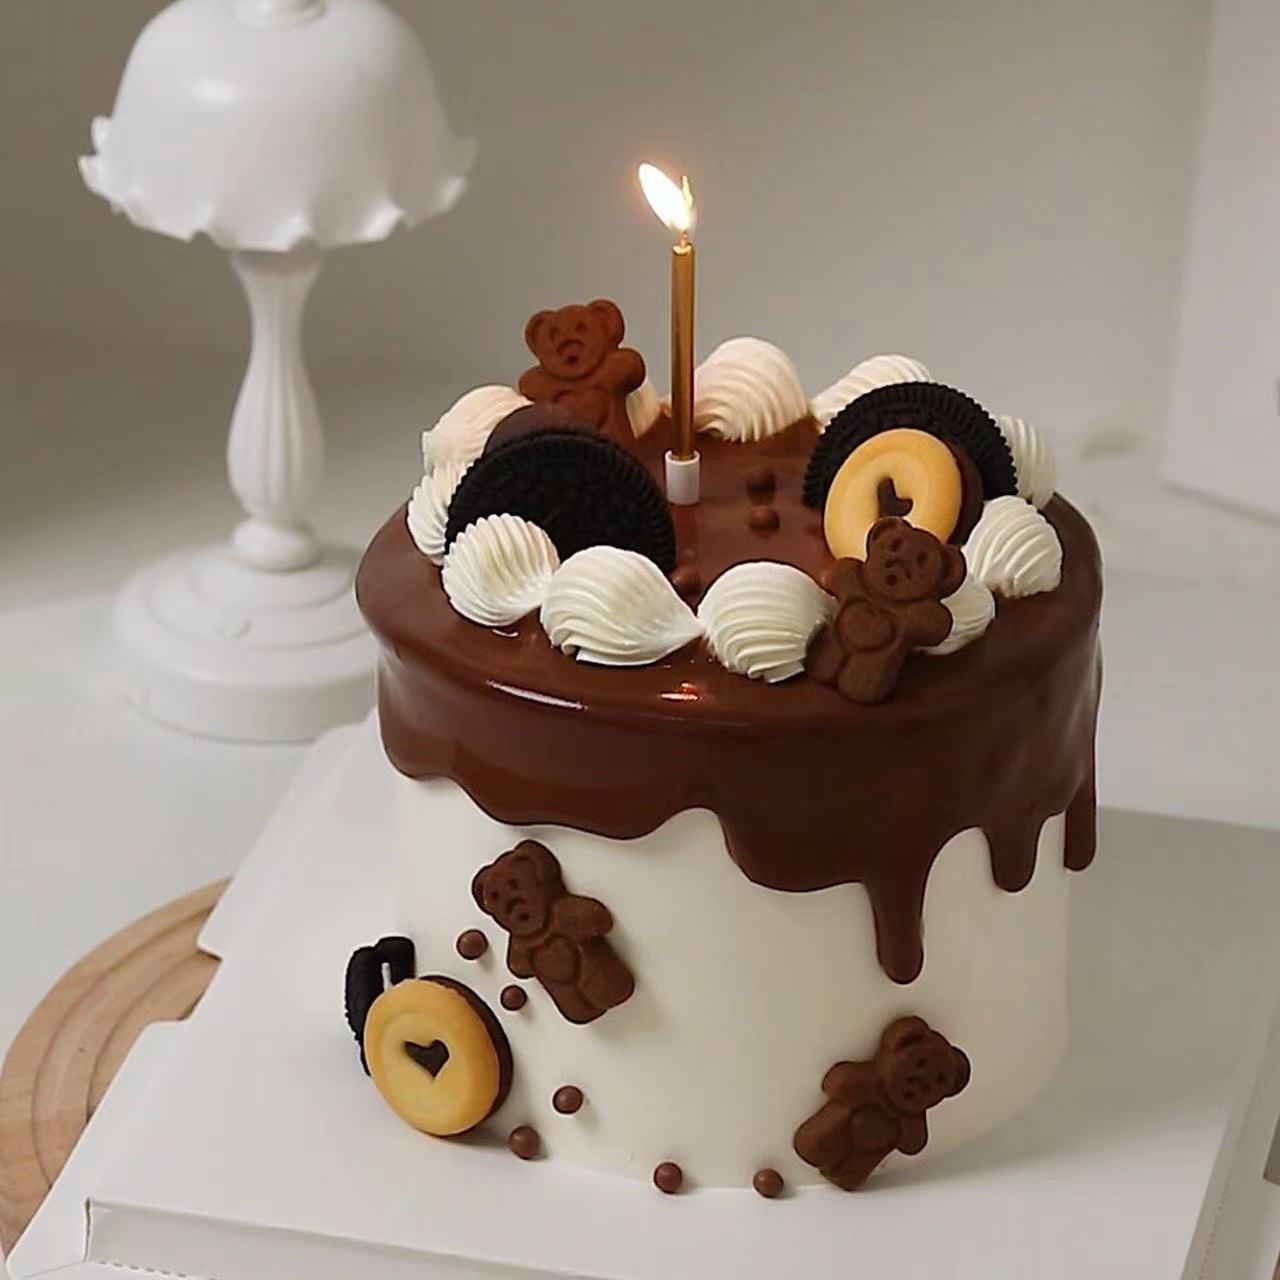 卡通小熊饼干巧克力淋面蛋糕装饰巧客芳爱心造型甜品烘焙装扮插件